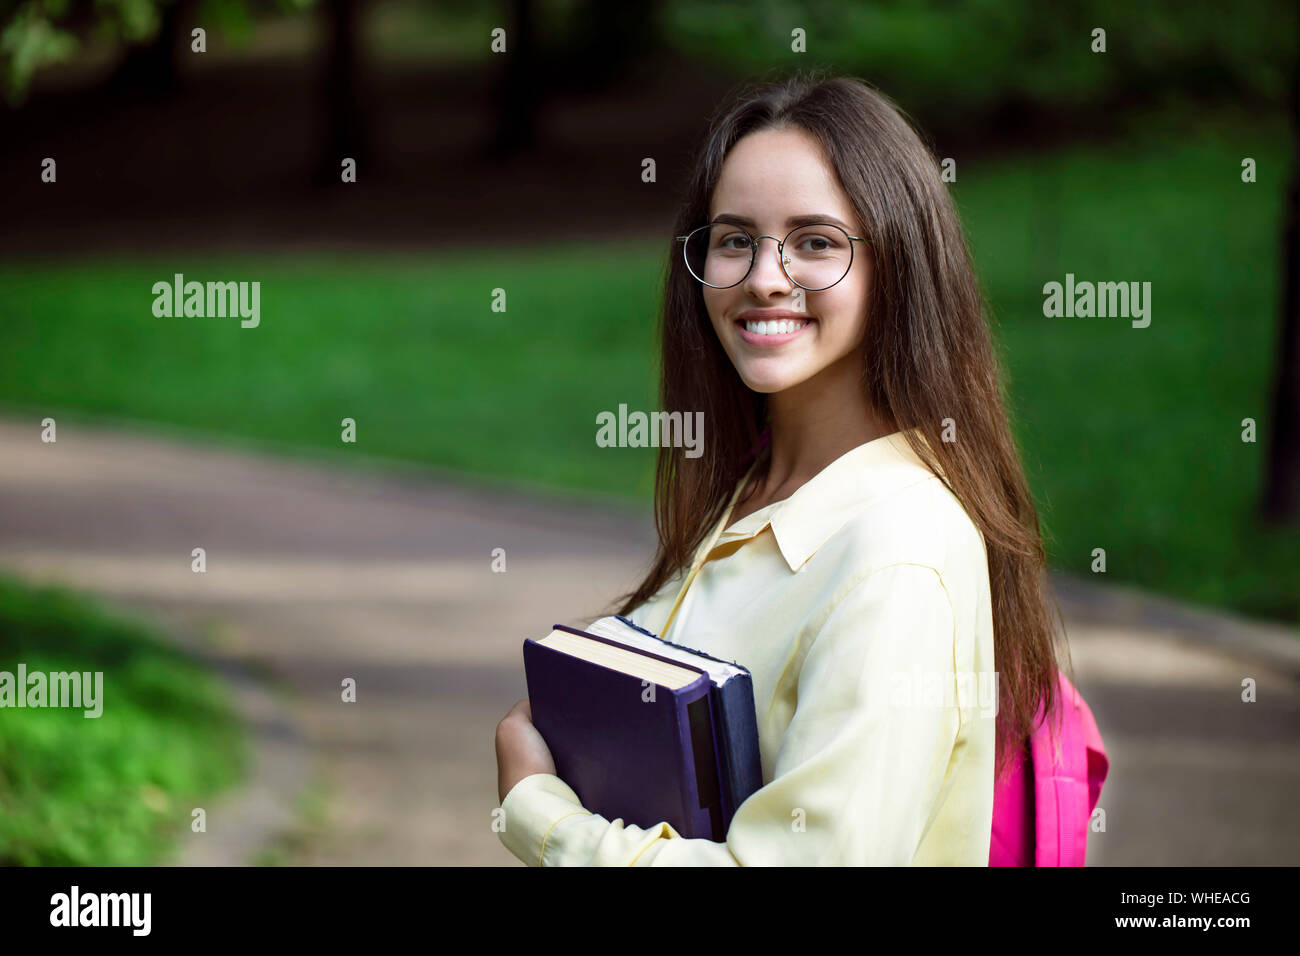 Portrait of young girl posing étudiant enthousiaste sur son chemin aux classes Banque D'Images